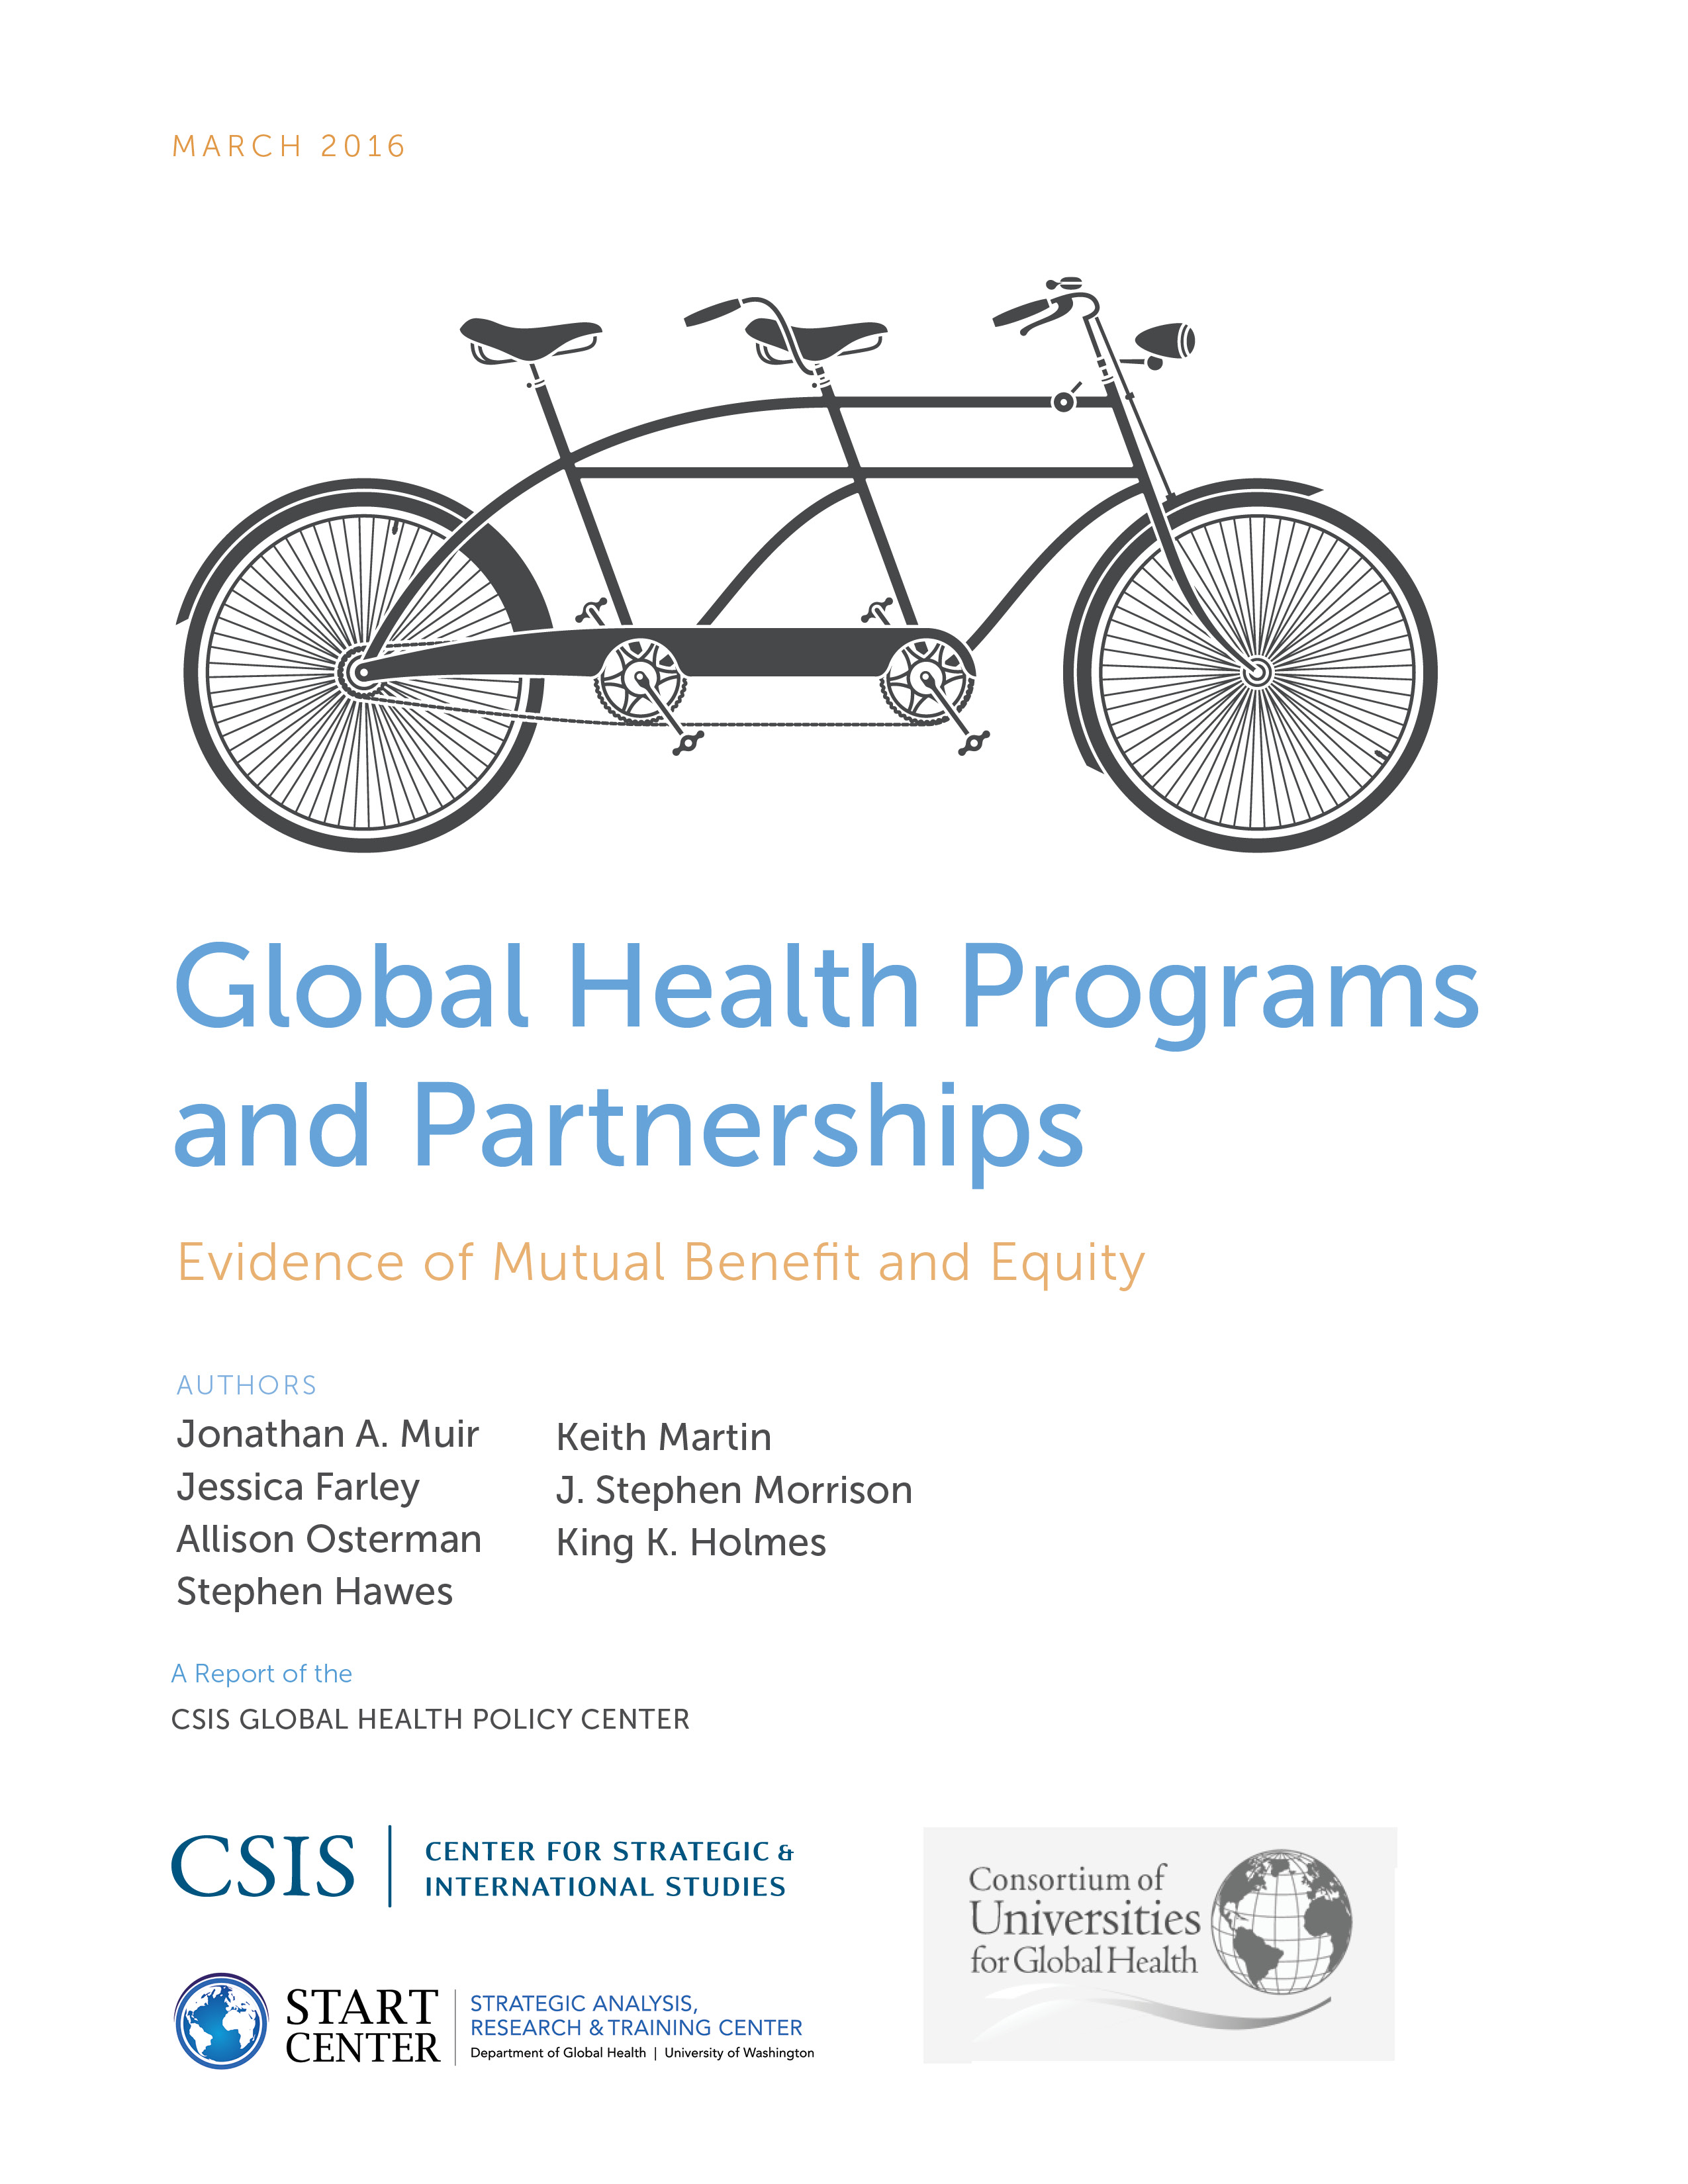 Global Health Programs and Partnerships